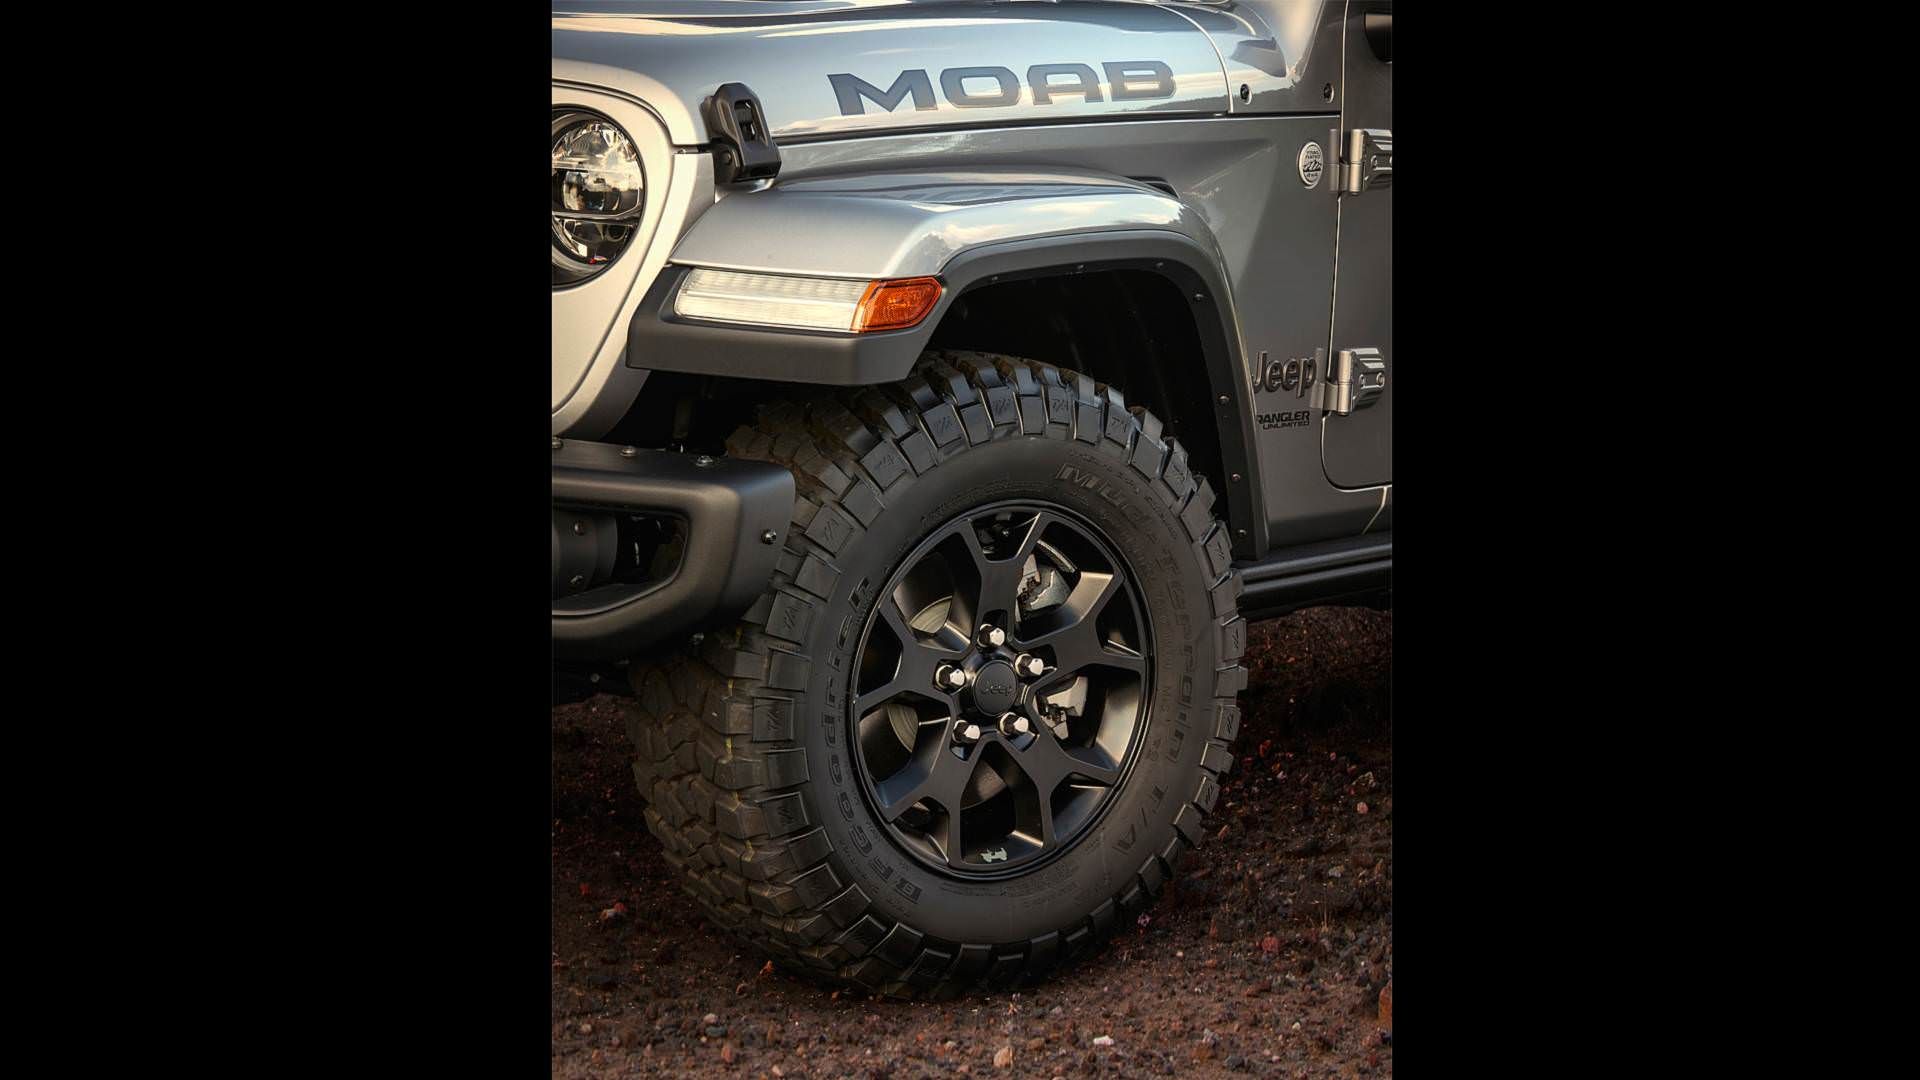 مرجع متخصصين ايران Jeep Wrangler Moab Edition / خودروي آف‌رود جيپ رانگلر نسخه موآب